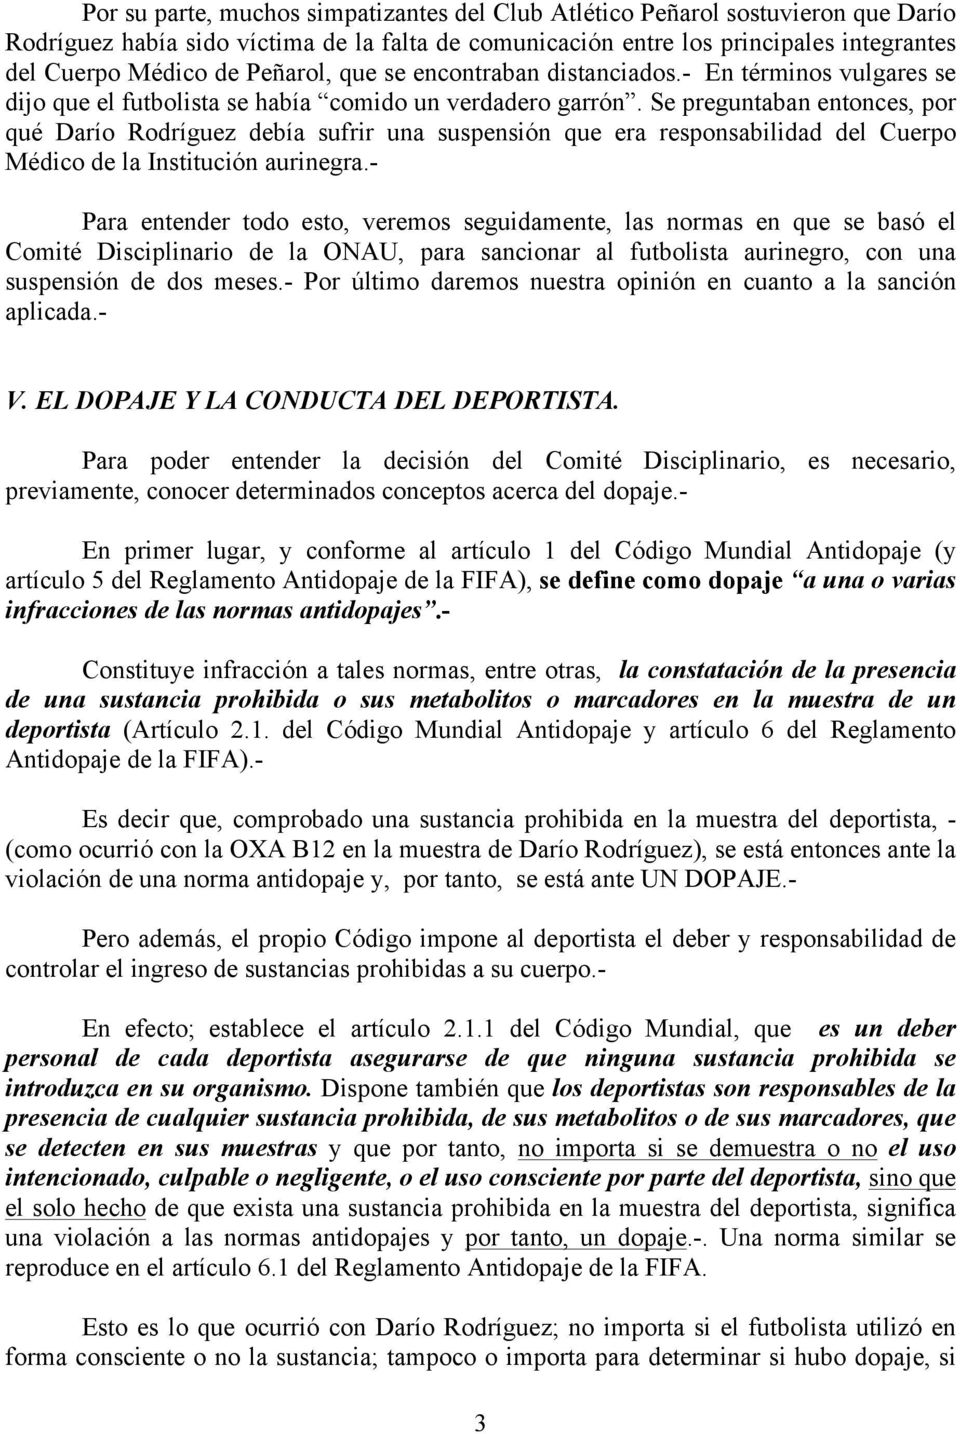 Se preguntaban entonces, por qué Darío Rodríguez debía sufrir una suspensión que era responsabilidad del Cuerpo Médico de la Institución aurinegra.